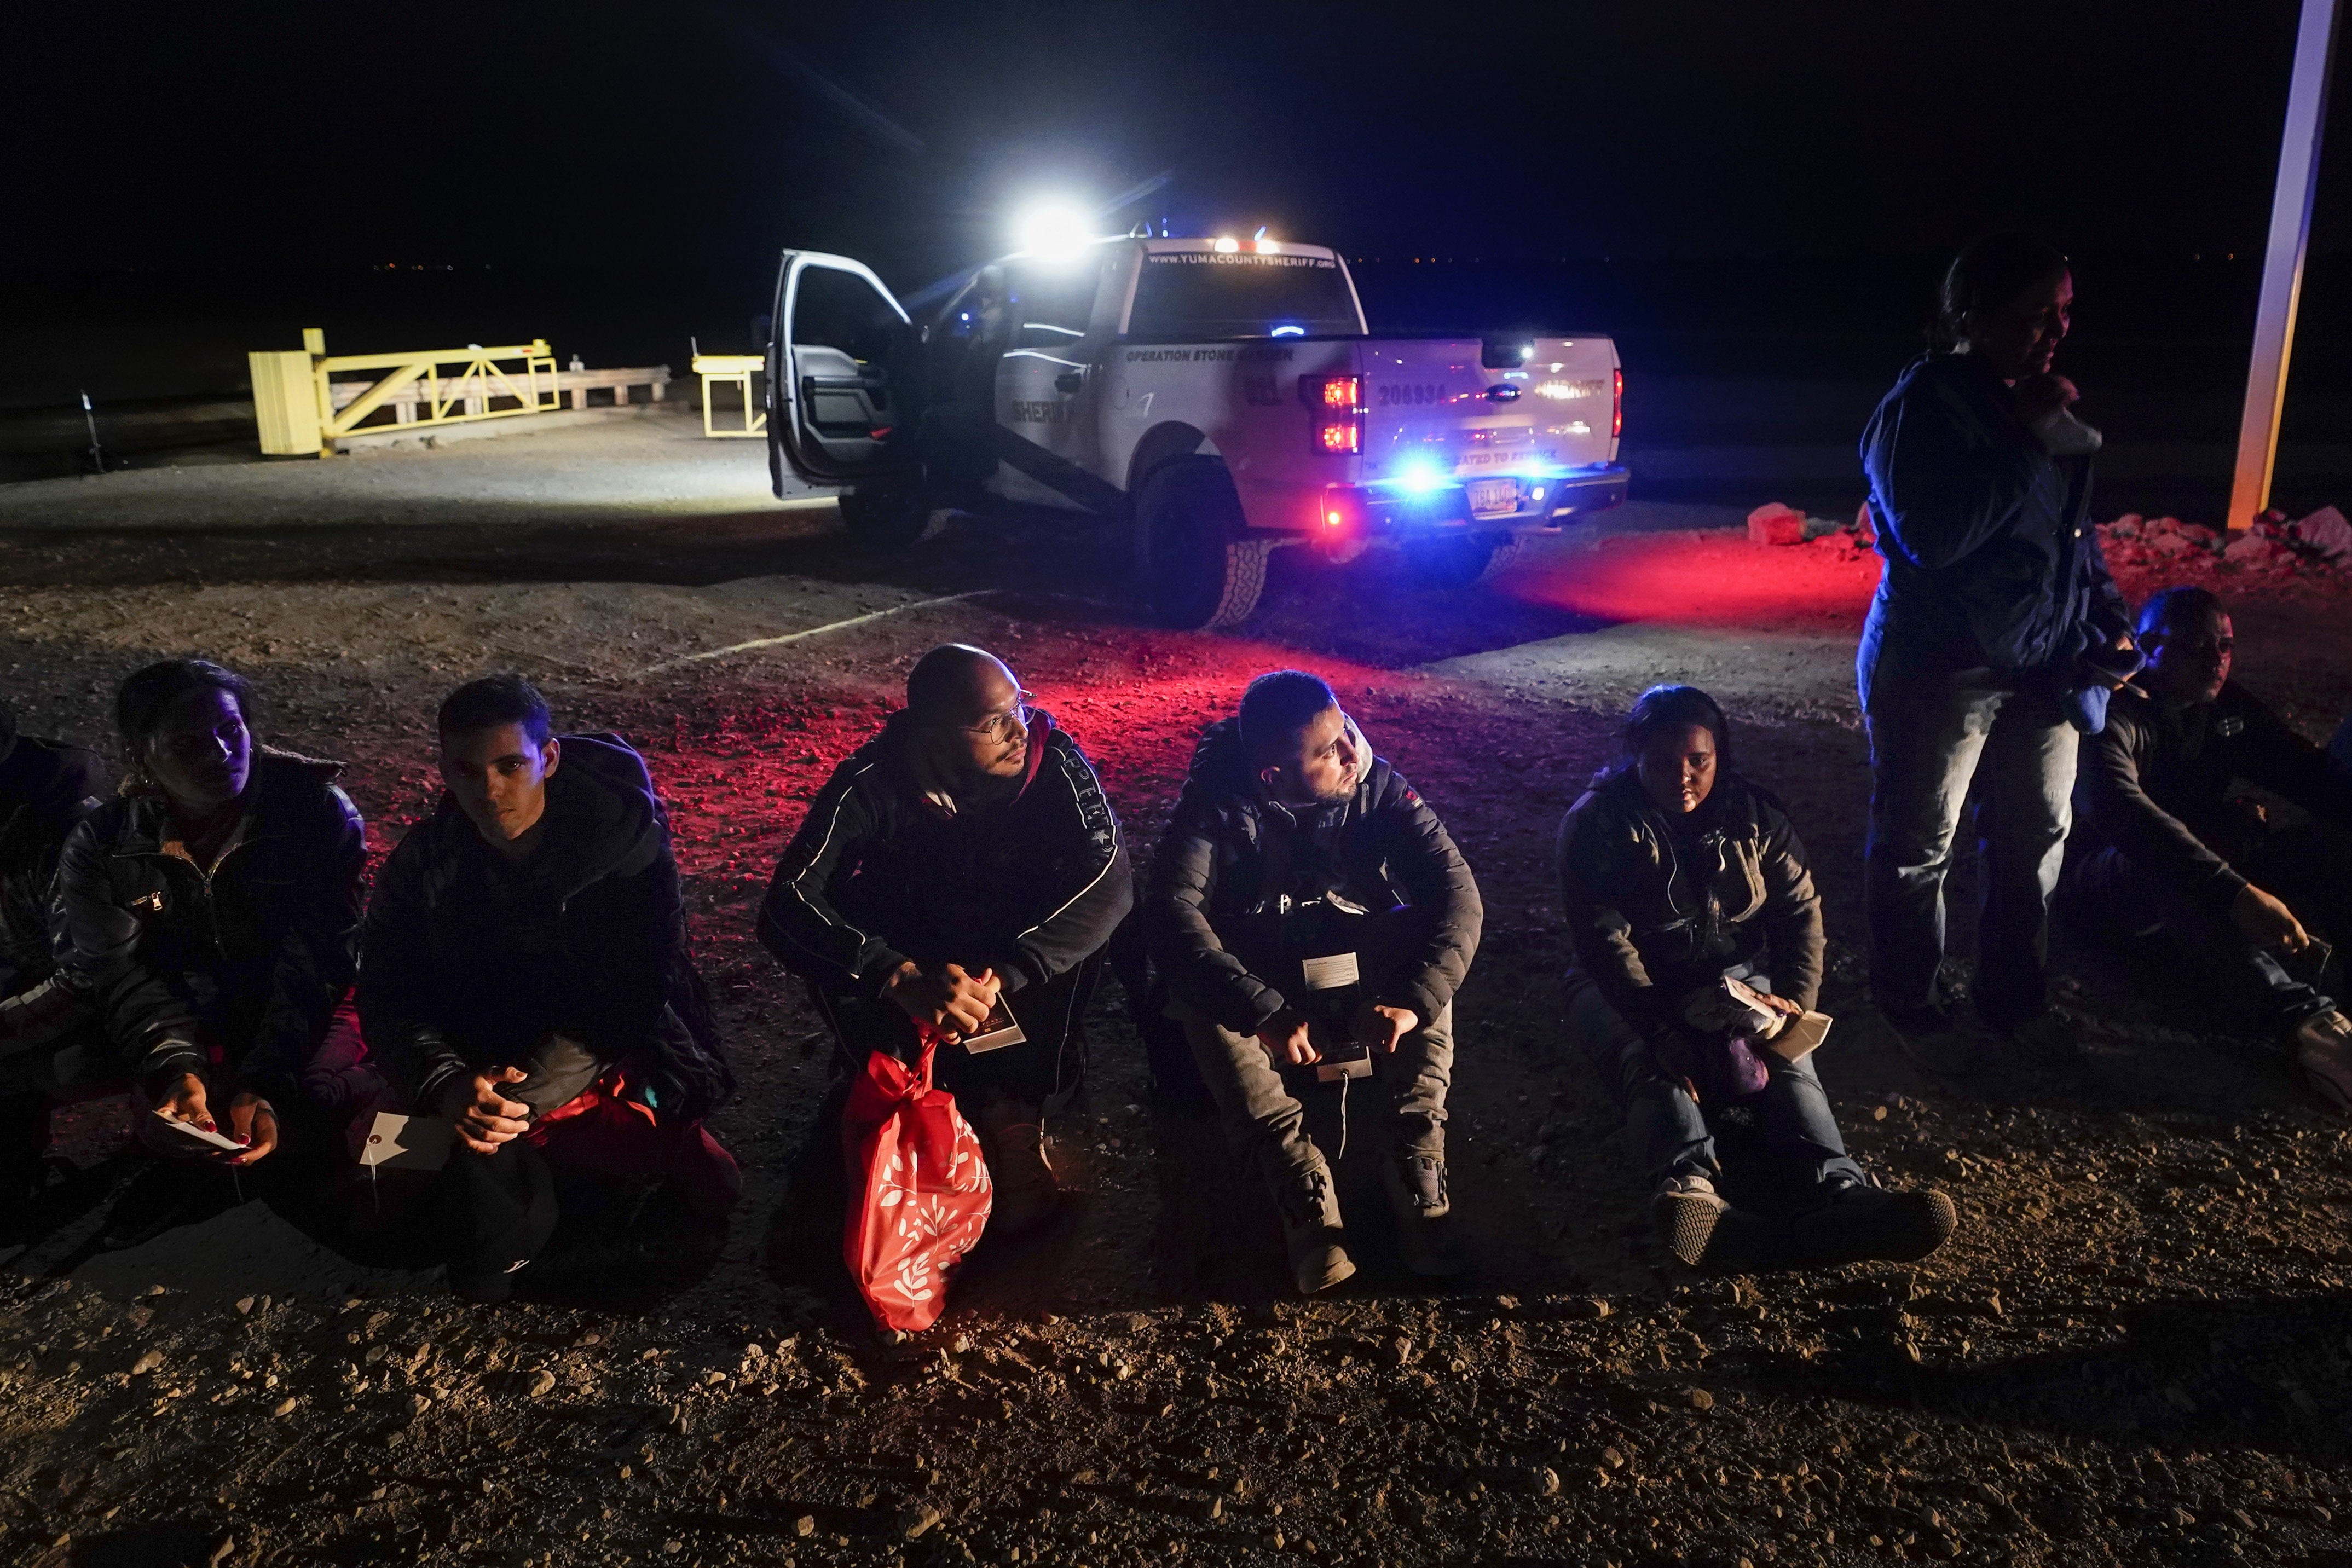 ARCHIVO - Varios migrantes esperan ser procesados por las autoridades estadounidense. (AP Foto/Gregory Bull, Archivo)